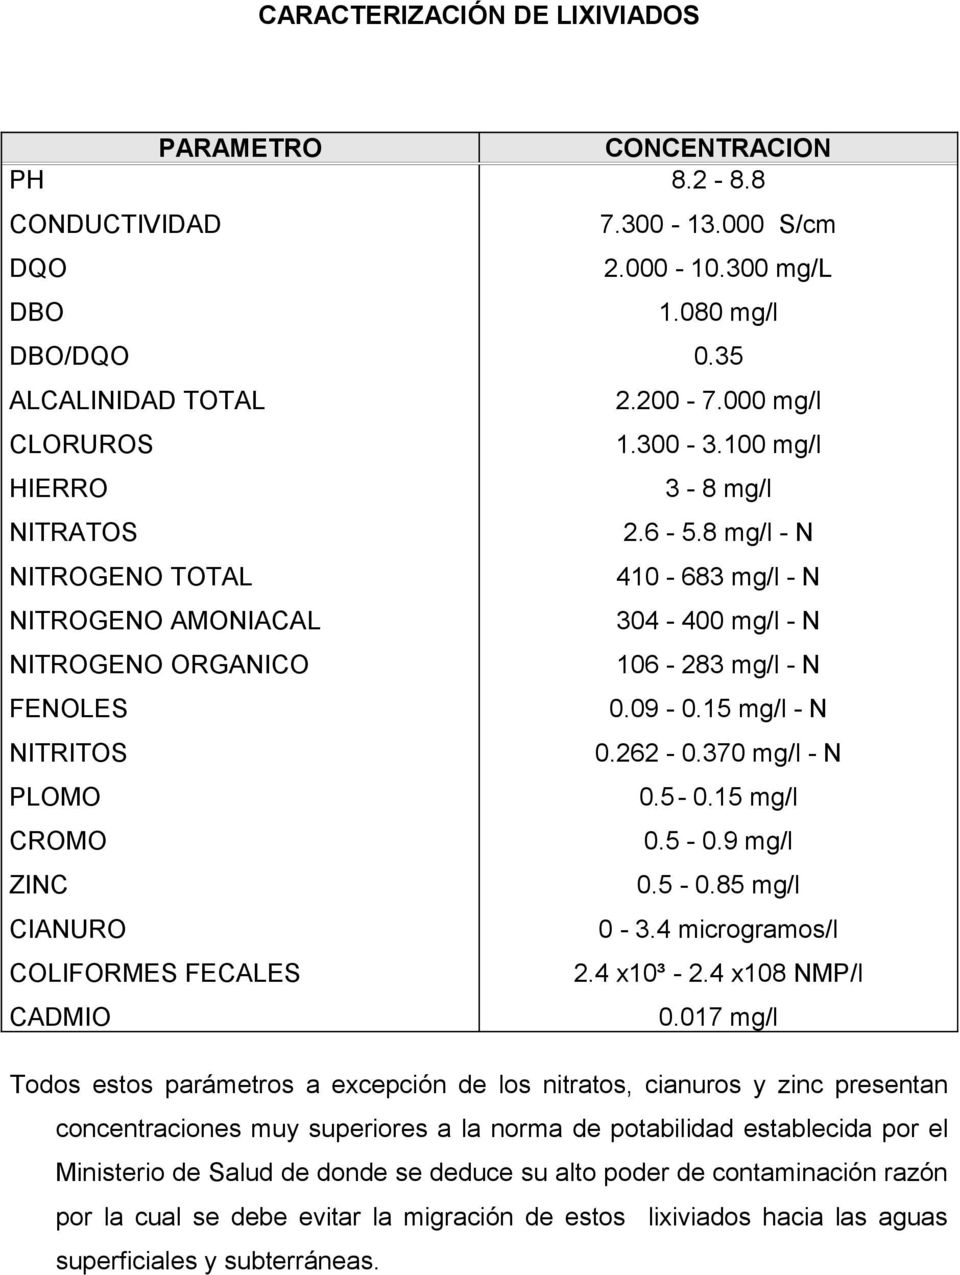 8 mg/l - N 410-683 mg/l - N 304-400 mg/l - N 106-283 mg/l - N 0.09-0.15 mg/l - N 0.262-0.370 mg/l - N 0.5-0.15 mg/l 0.5-0.9 mg/l 0.5-0.85 mg/l 0-3.4 microgramos/l 2.4 x10³ - 2.4 x108 NMP/l 0.